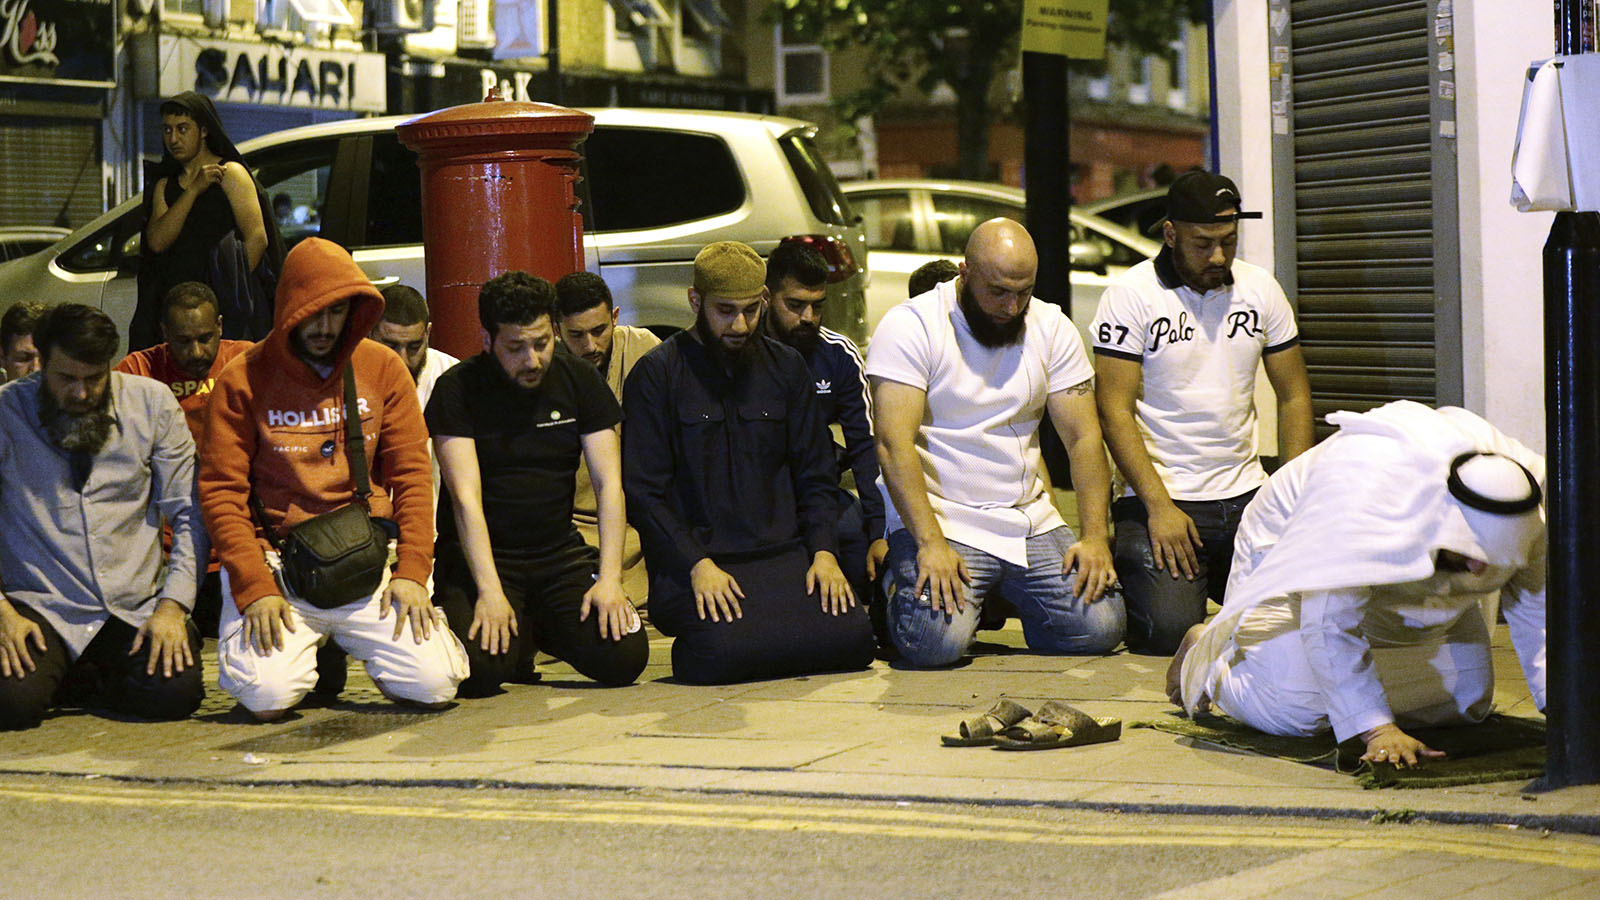 תושבים מתפללים ליד המסגד בו התרחש אירוע הדריסה בלונדון אמש (Yui Mok/PA via AP)